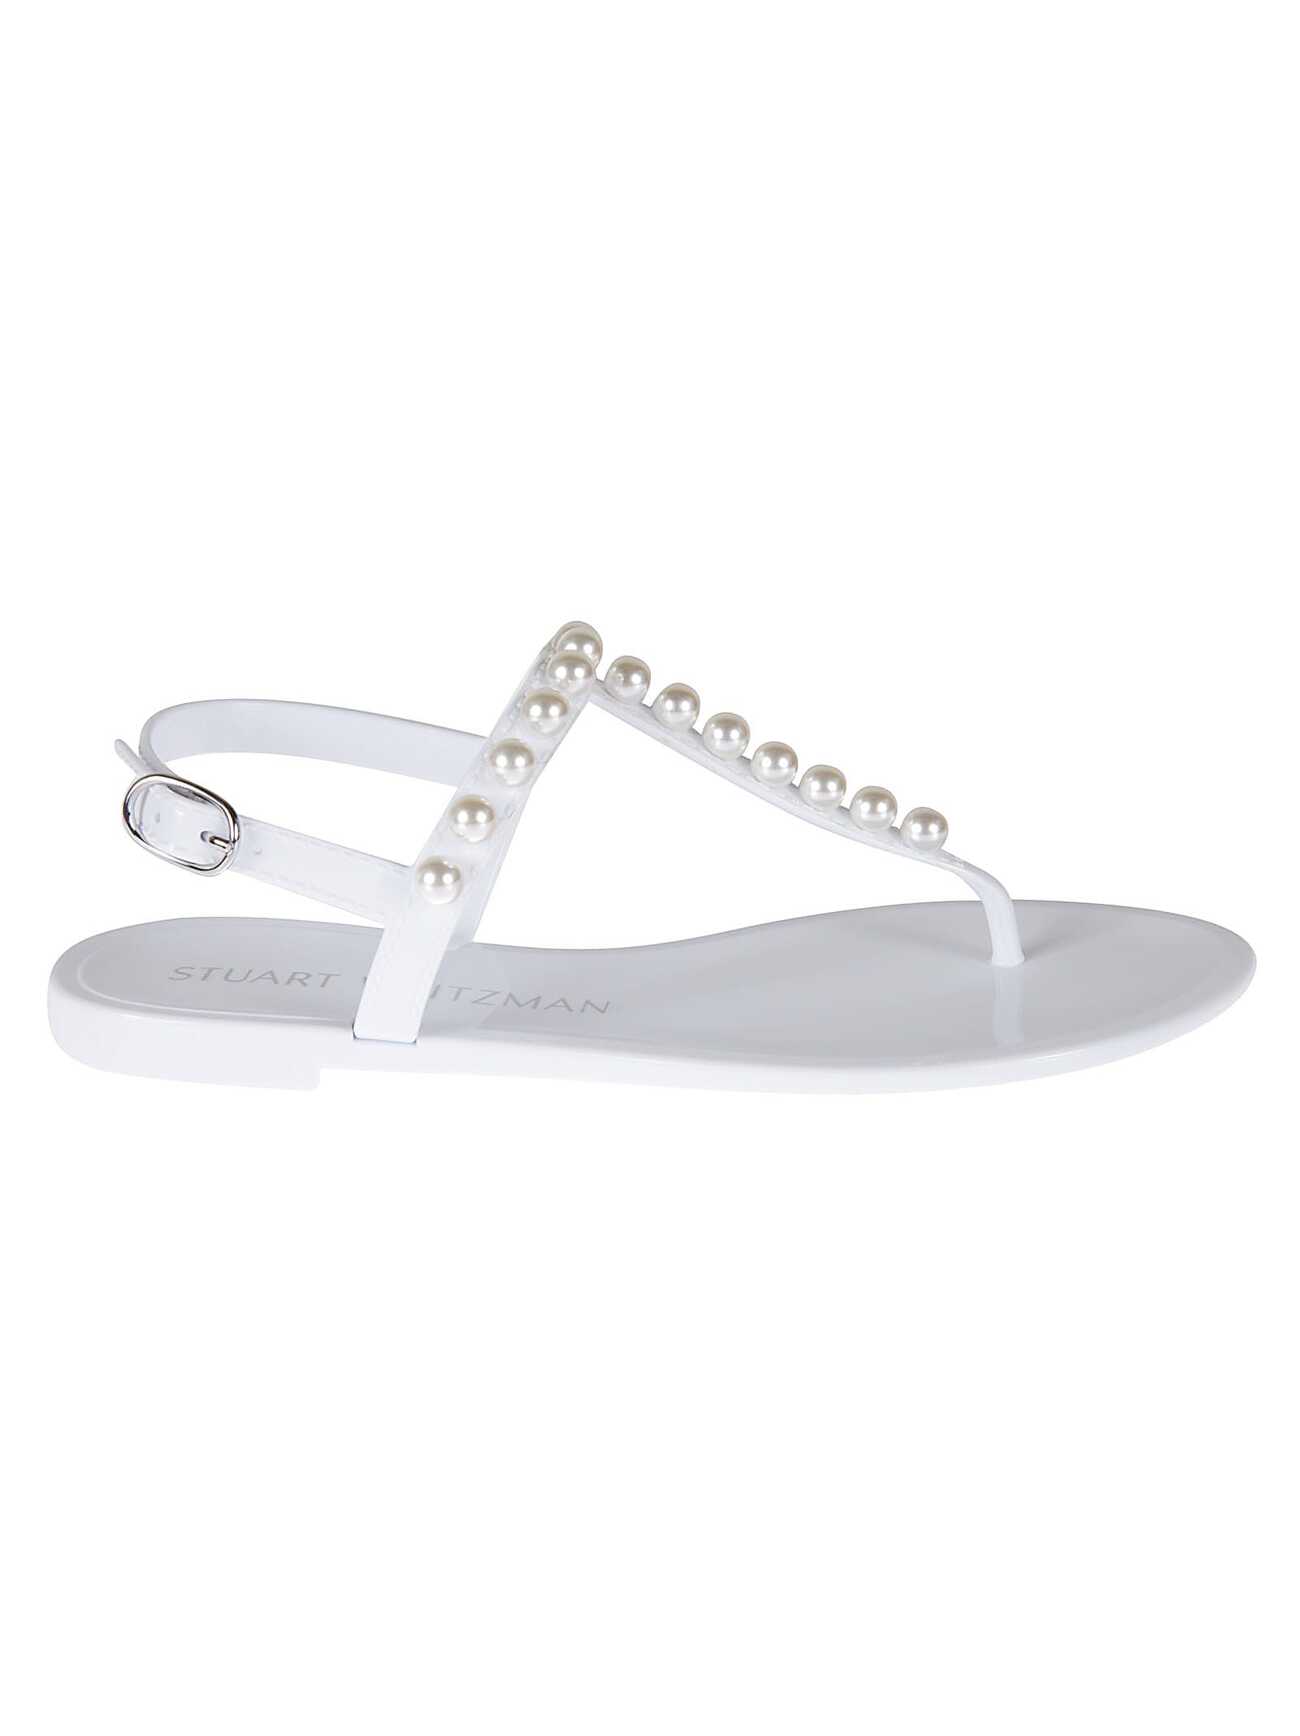 Stuart Weitzman Goldie Jelly Sandals in white